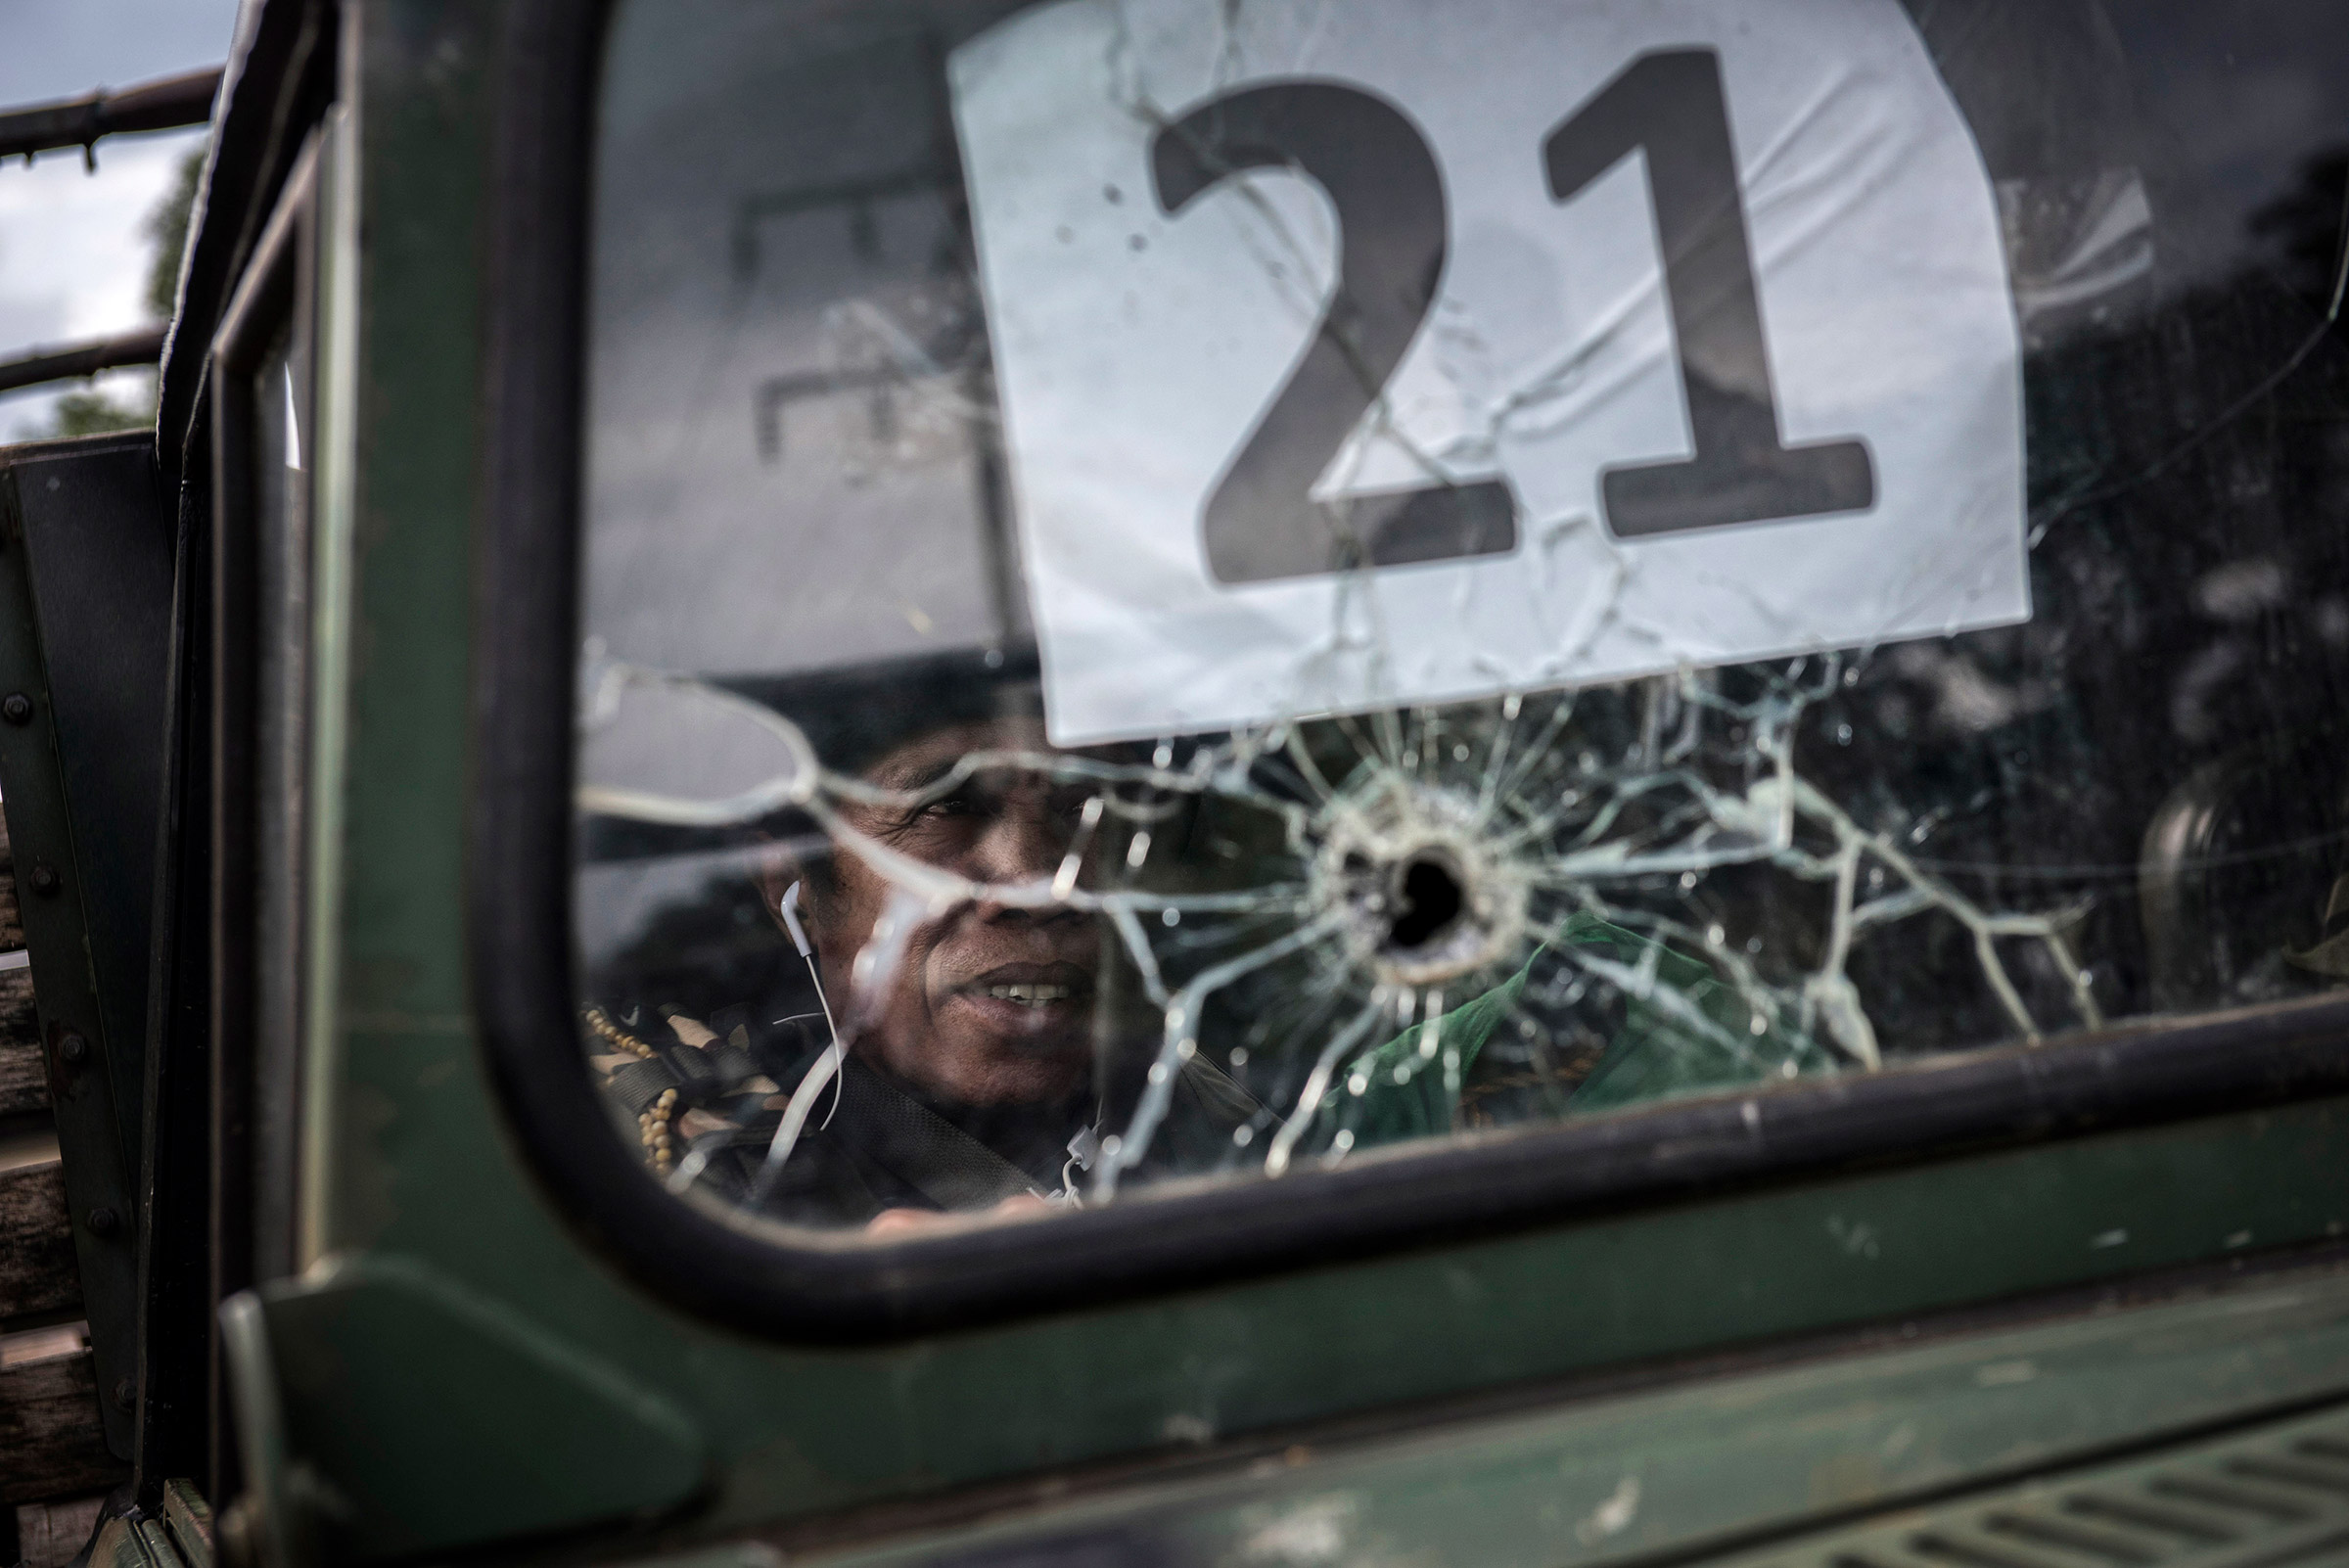 Военные действия в Марави начались после того, как правительственные силы получили сообщение, что в городе находится &laquo;самый разыскиваемый террорист&raquo; Иснилон Хапилон &mdash; лидер группировки &laquo;Абу Сайяф&raquo; (ведет борьбу за независимое исламское государство на Филиппинах). По официальным сообщениям, он был убит вместе с Омаром Мауте 16 октября.
